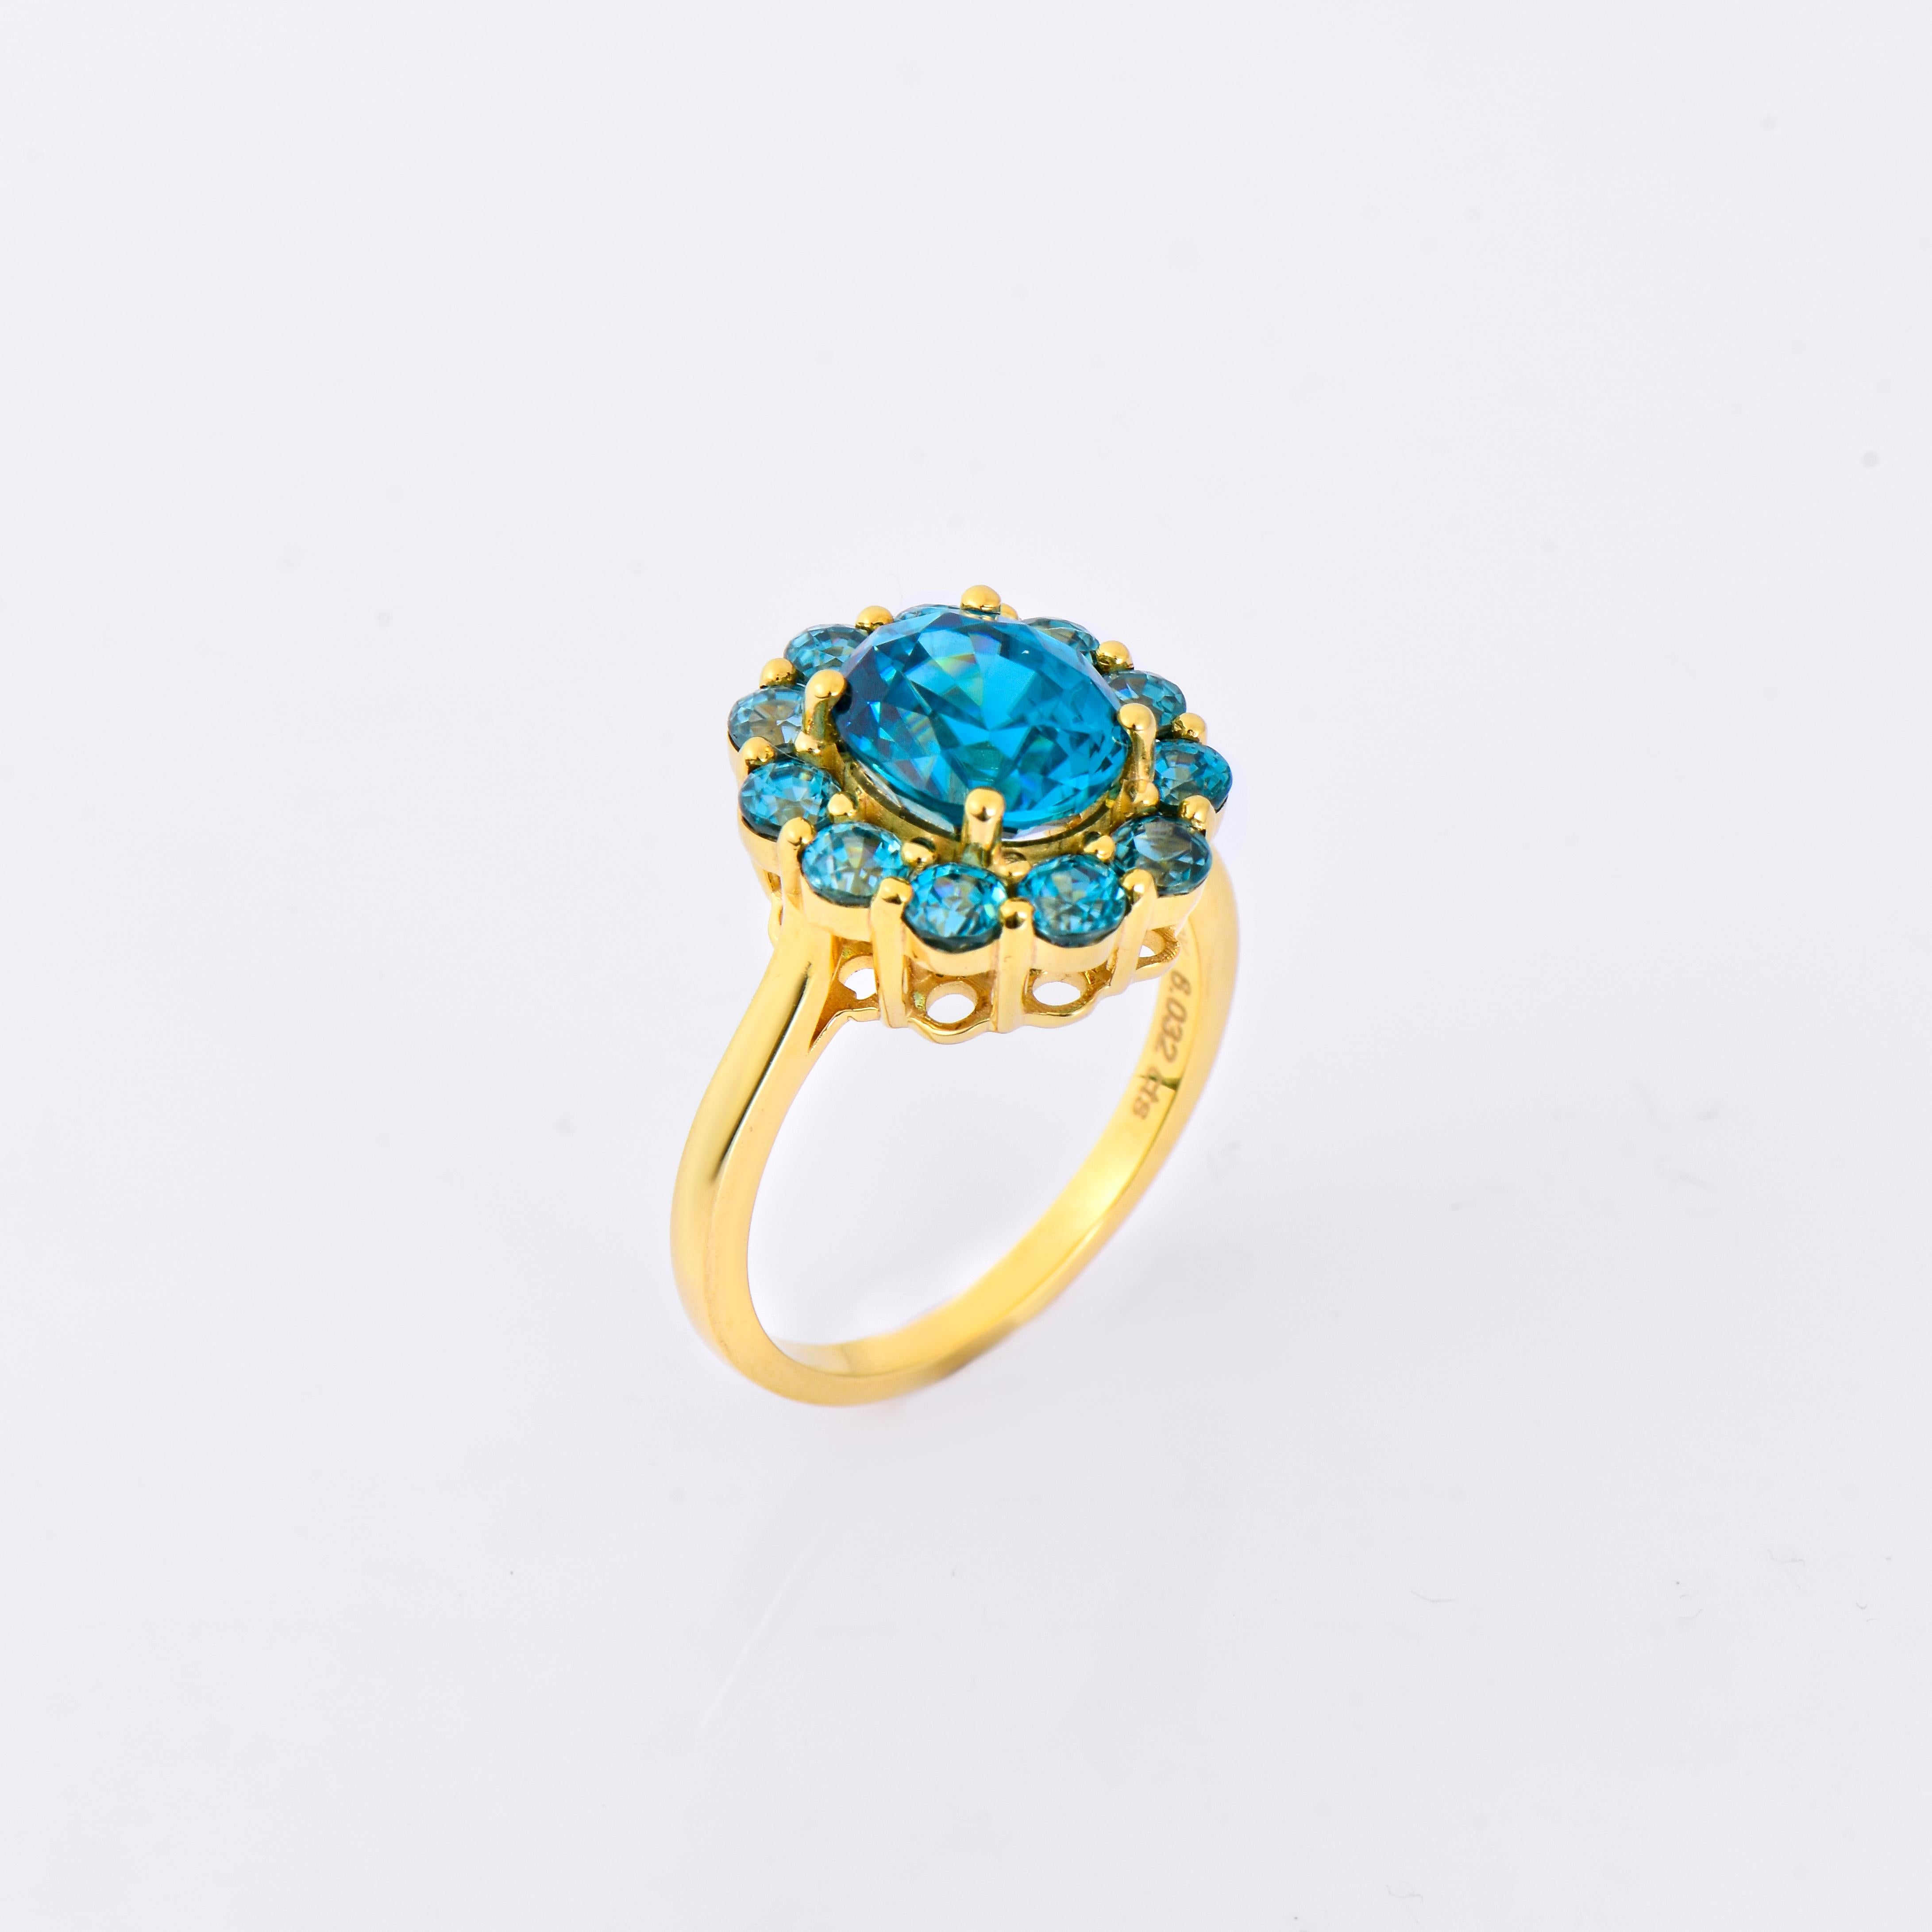 Orloff of Denmark; 10 Karat Goldring mit 12 natürlichen blauen Zirkonen aus Kambodscha von insgesamt 6 Karat.

Dieser exquisite Ring aus 10-karätigem Gold ist mit strahlend blauen Zirkonen aus Kambodscha besetzt, die Luxus und Eleganz ausstrahlen.